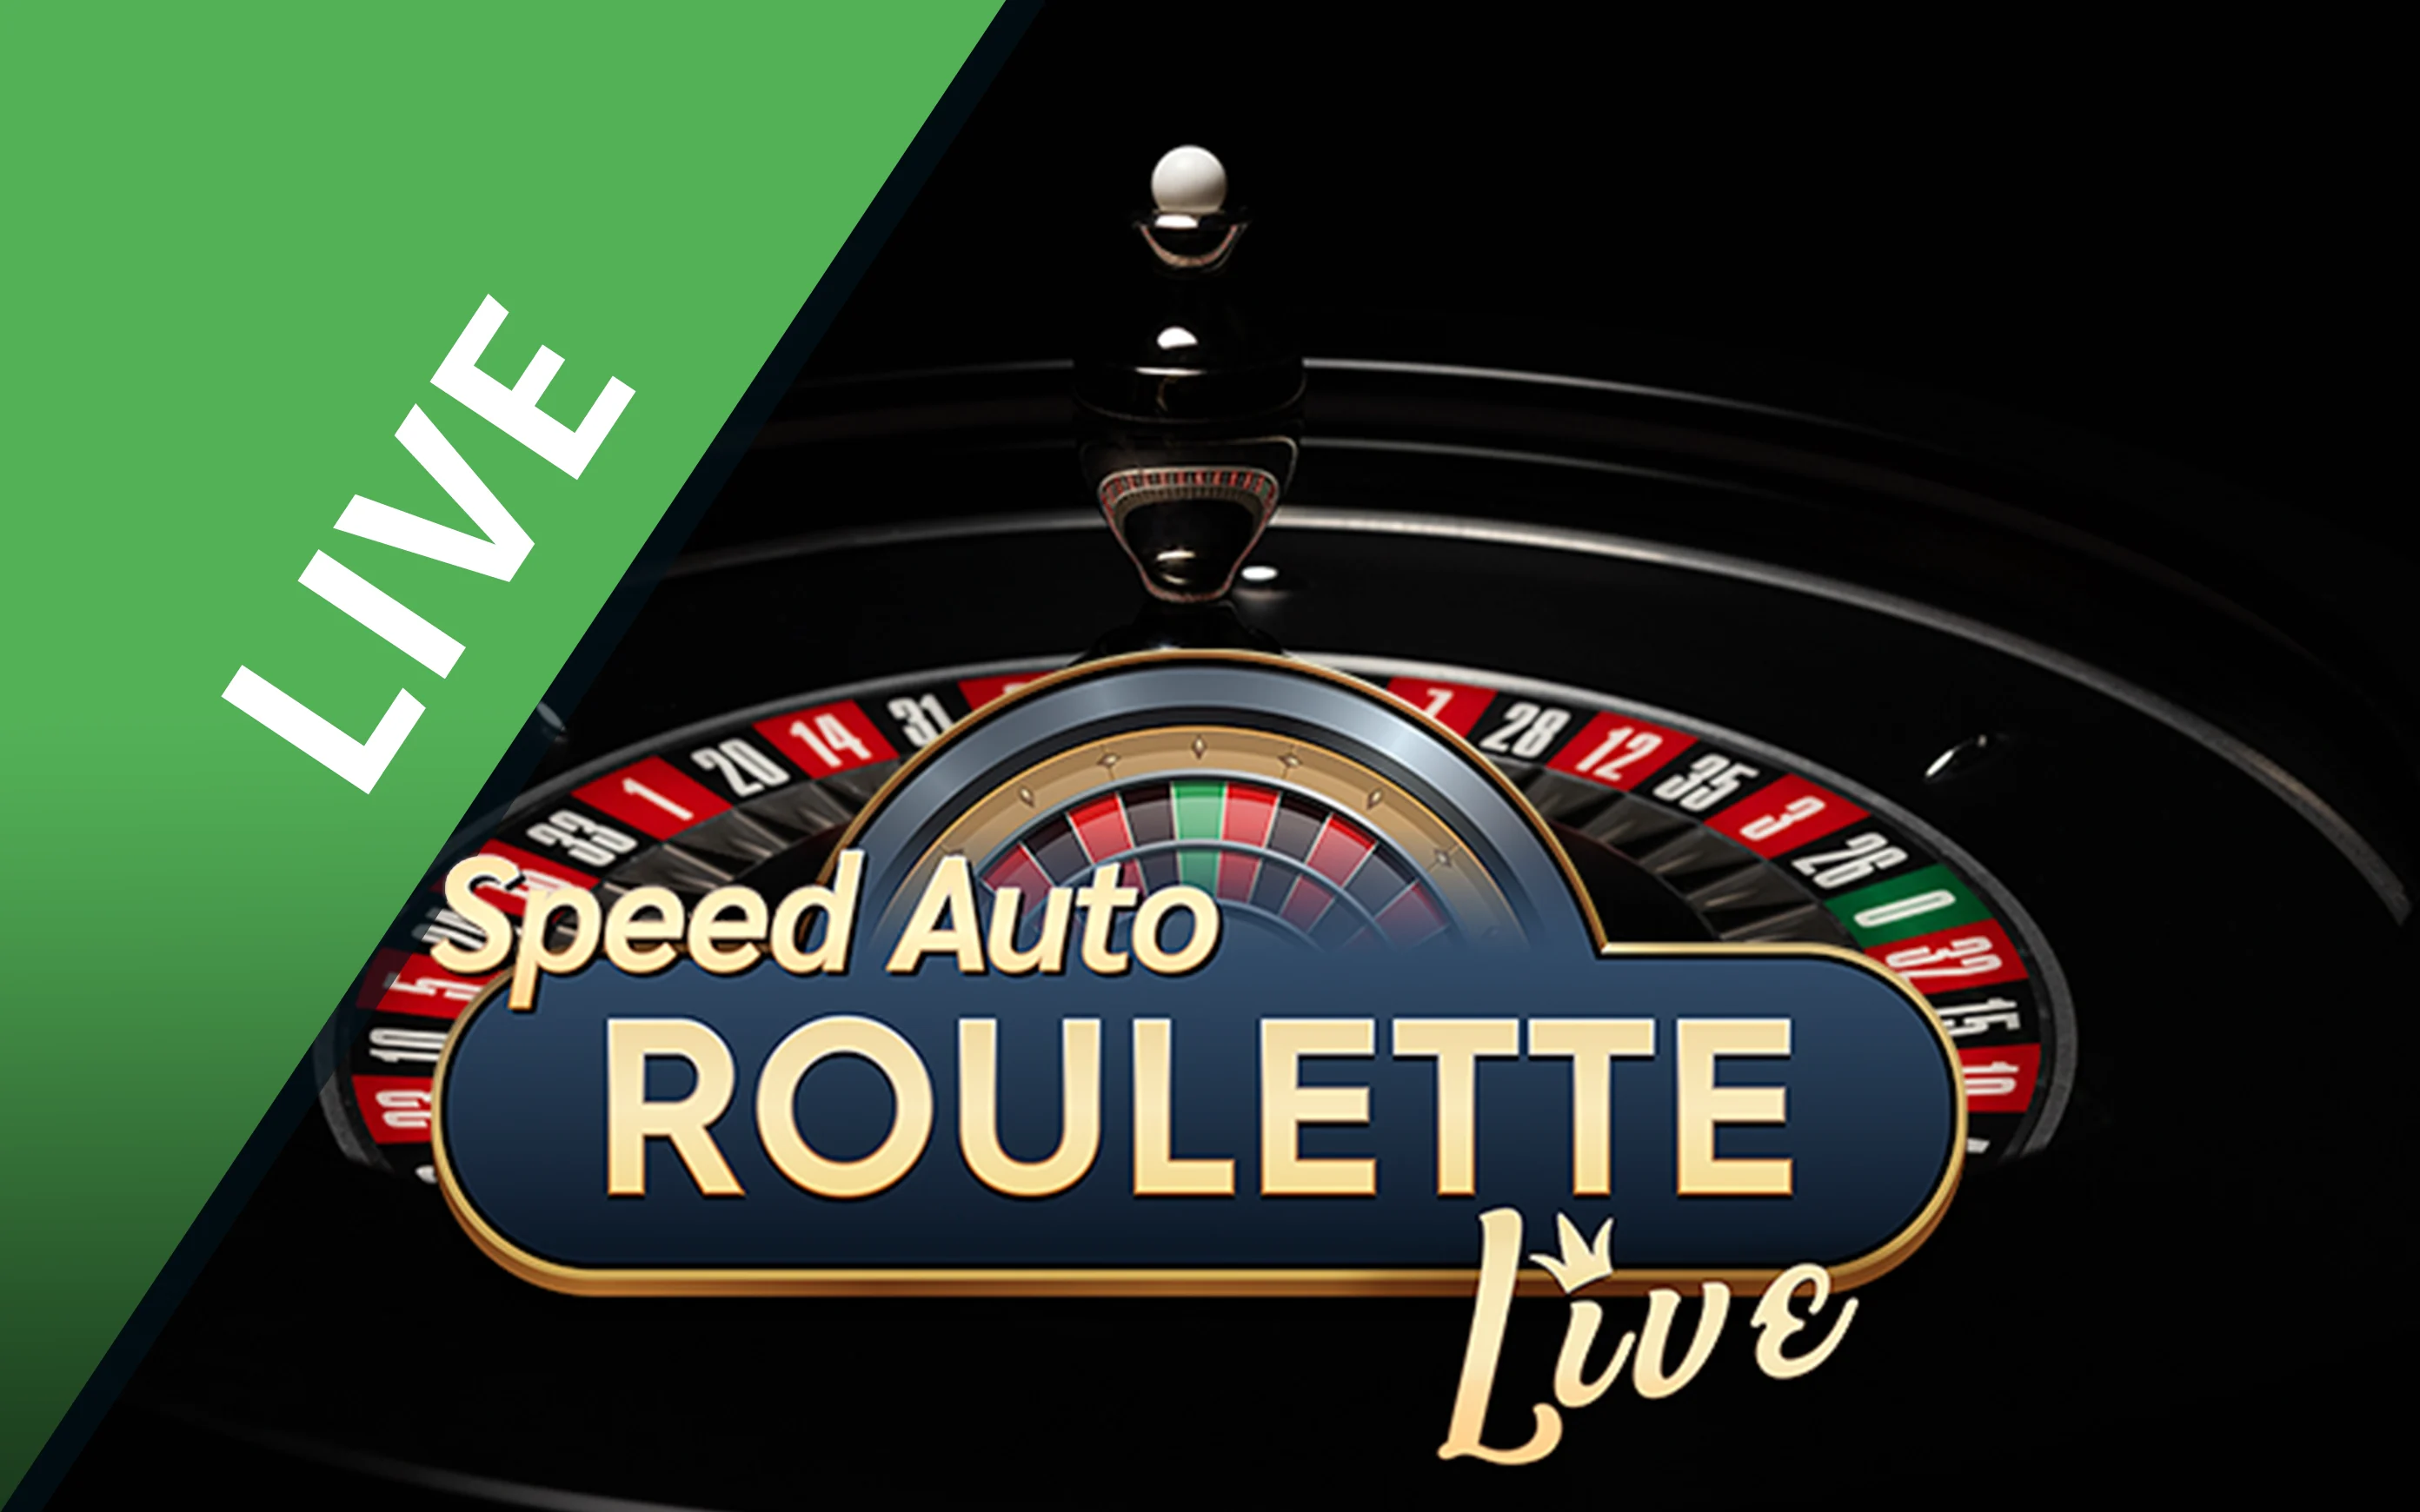 Chơi Speed Auto Roulette trên sòng bạc trực tuyến Starcasino.be